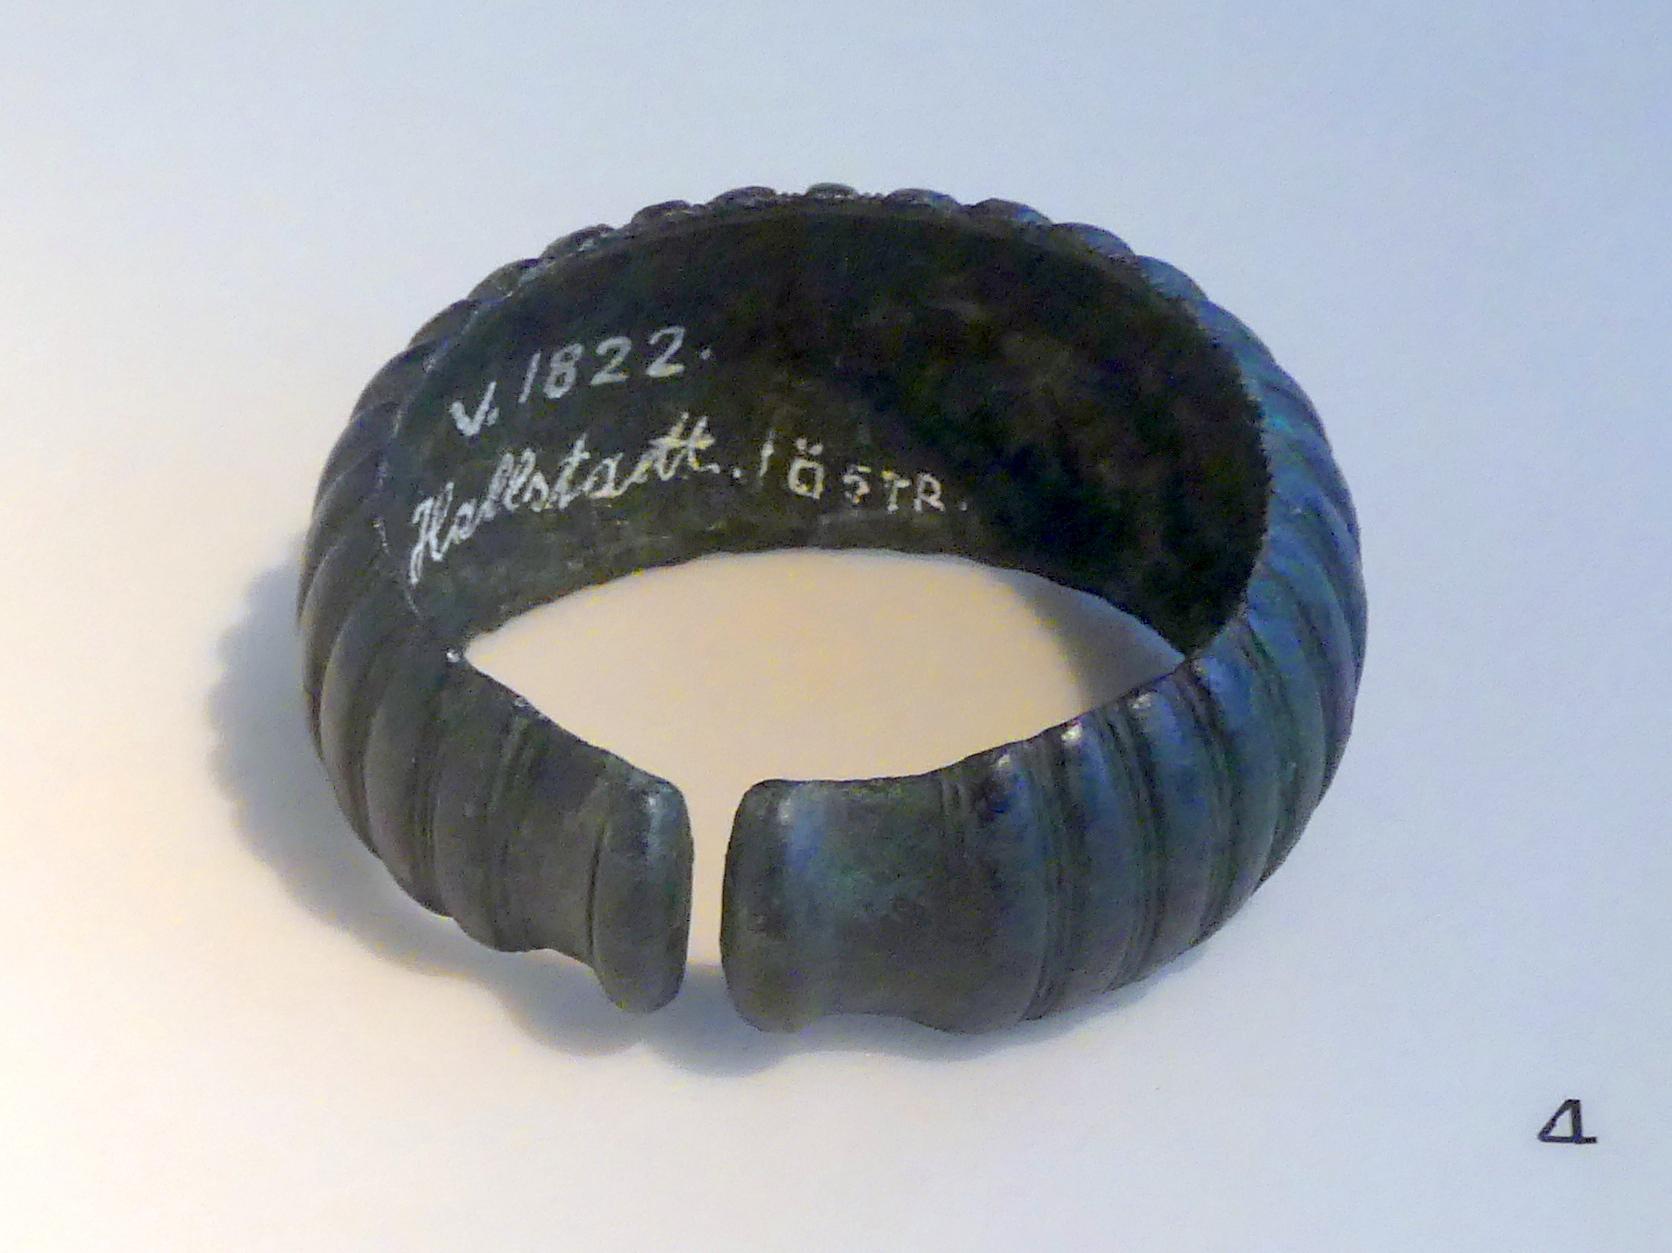 Melonenarmband, Hallstattzeit, 700 - 200 v. Chr., 700 - 600 v. Chr., Bild 1/2